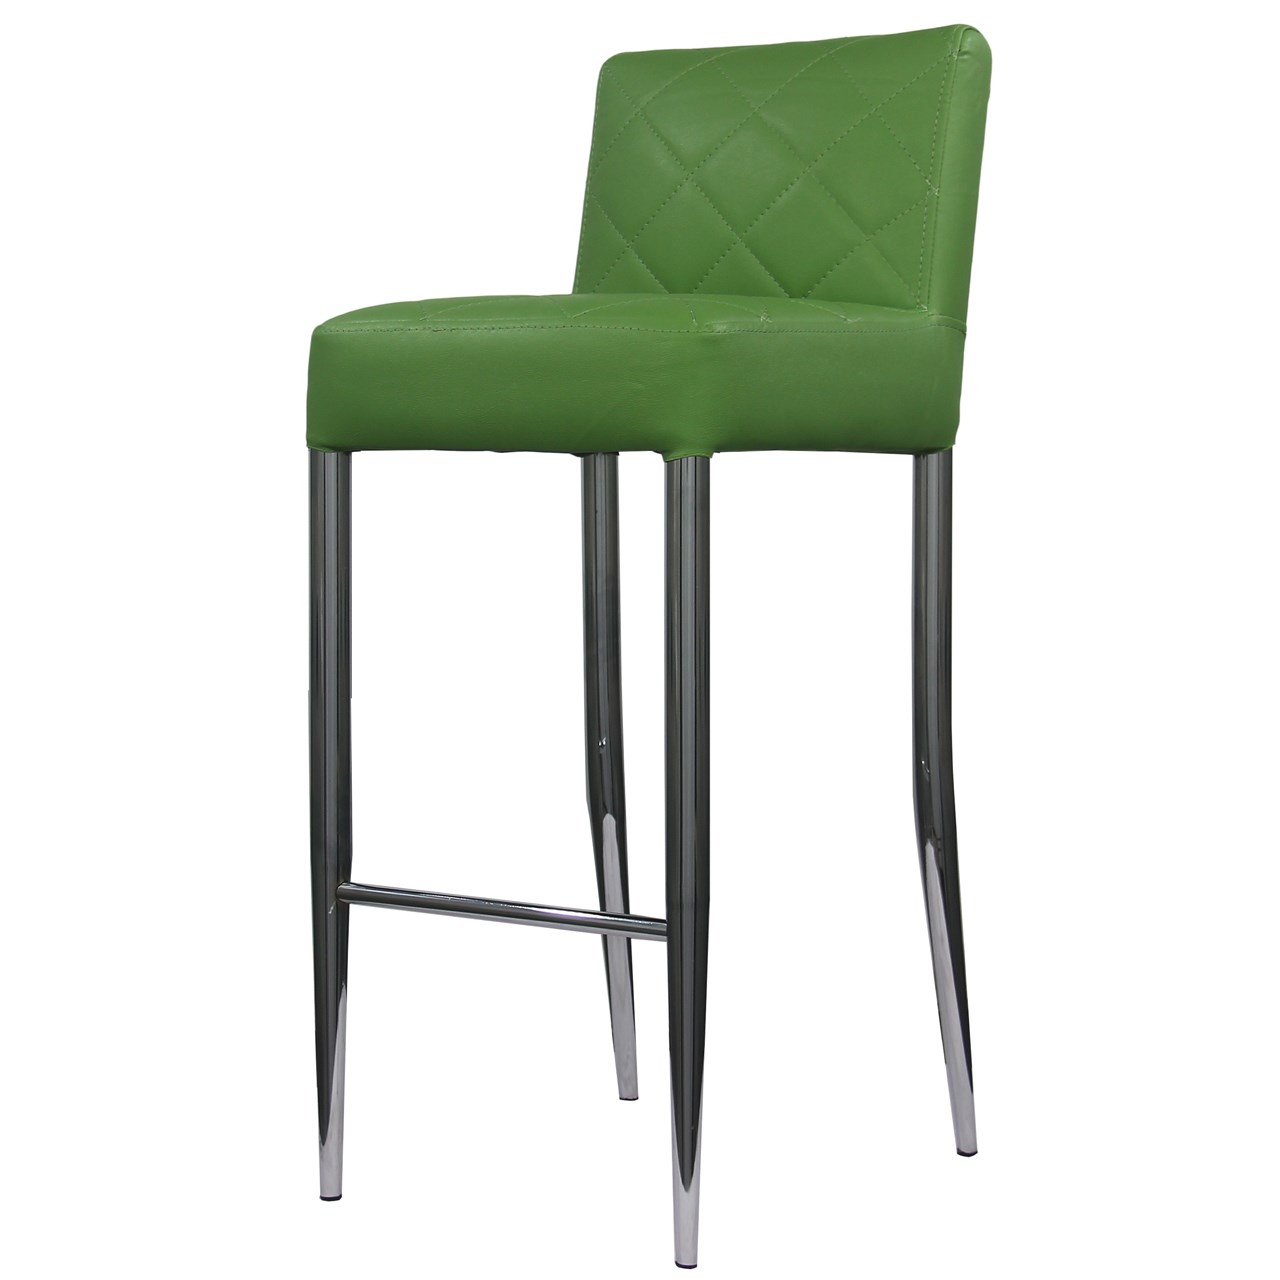 صندلی اپن فلزی  داته مدل CBSBZ01